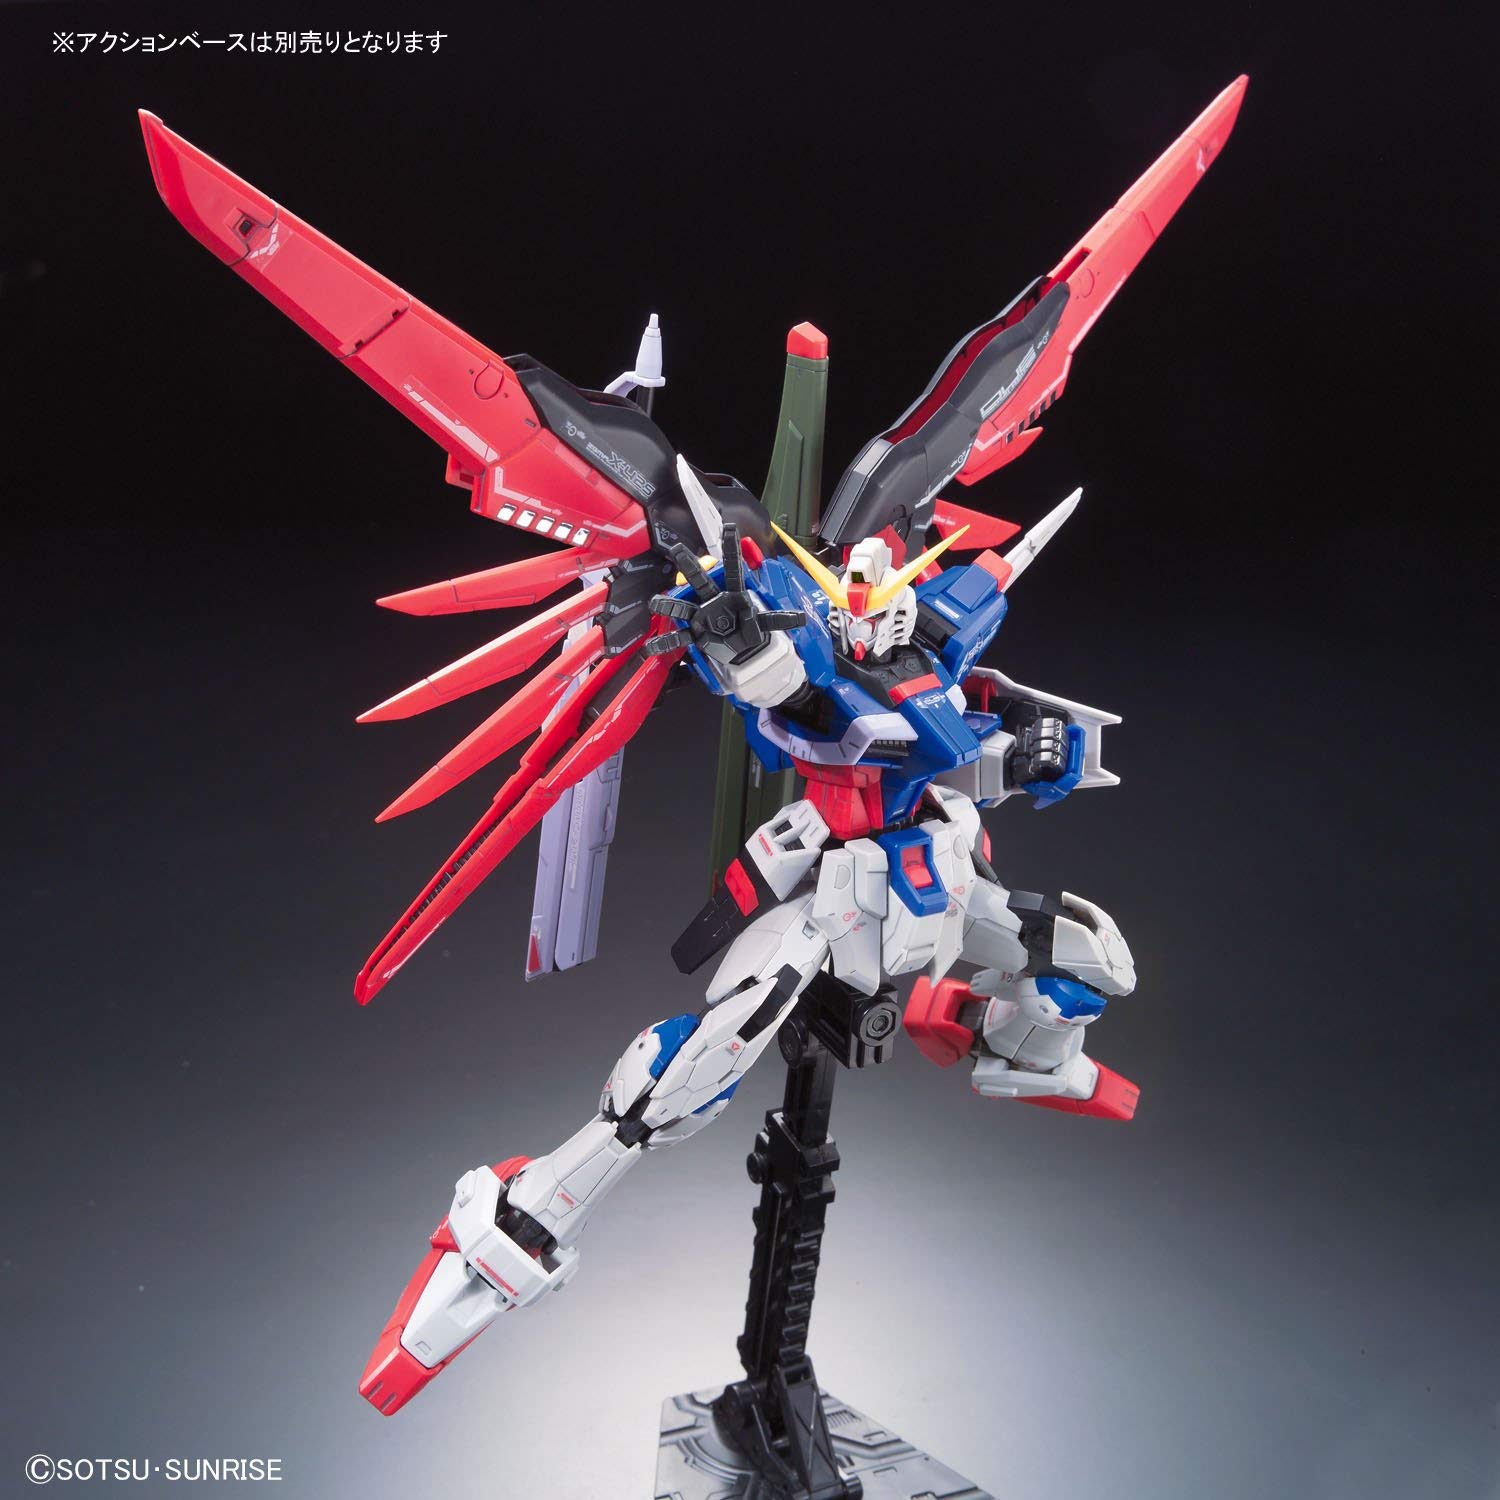 Gundam 1/144 RG #11 Seed Destiny ZGMF-X42S Destiny Gundam Model Kit